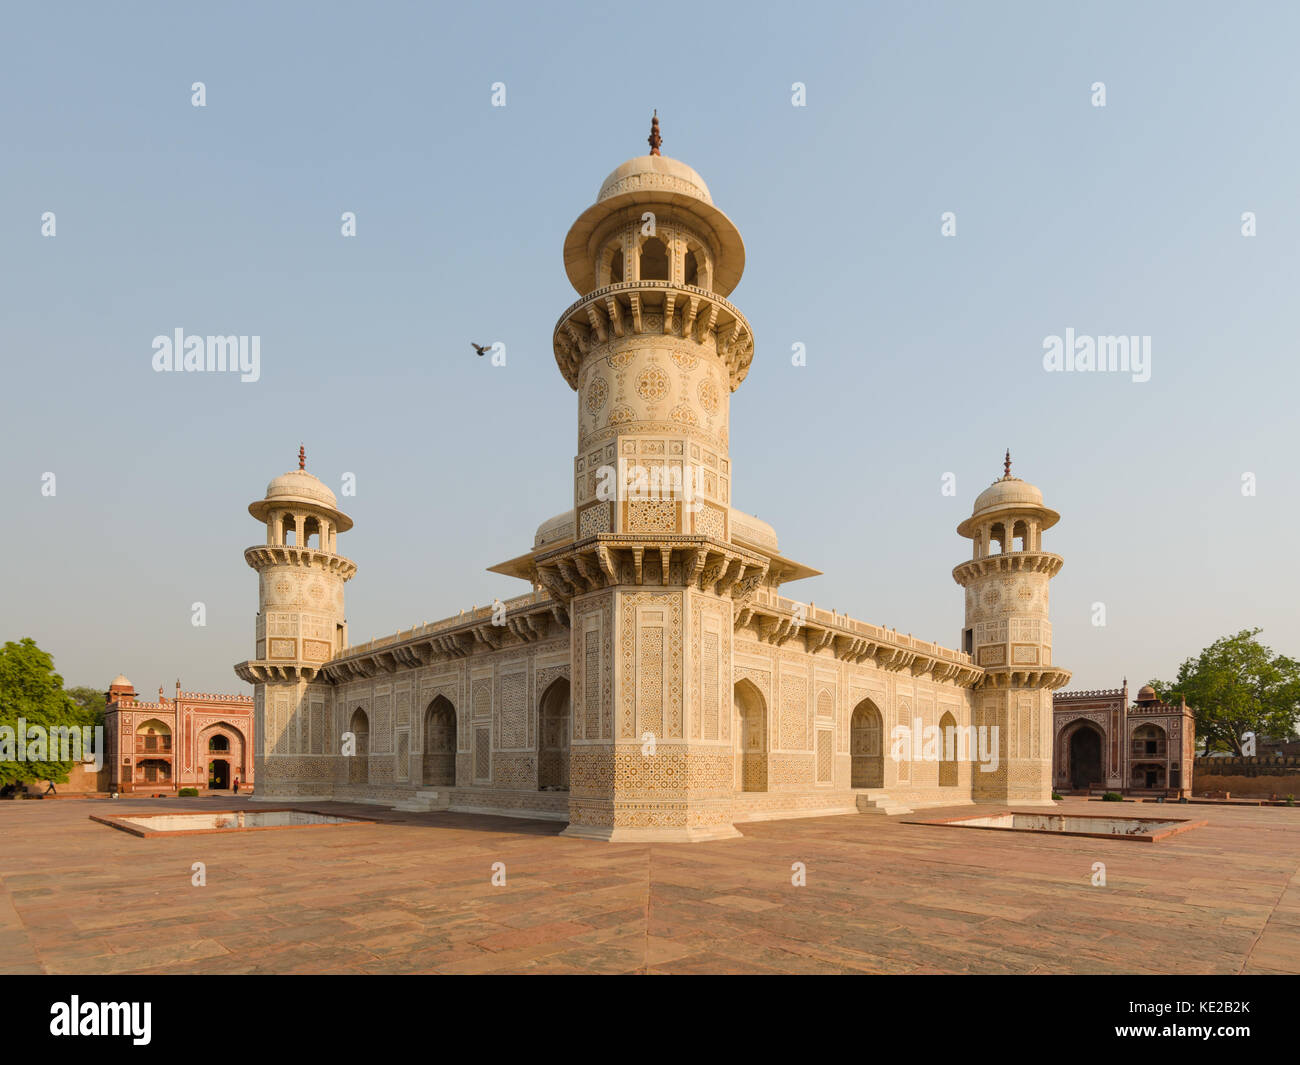 Vue panoramique de l'ancien mausolée d'itimad ud daulah tombe, un édifice du patrimoine de l'Unesco à Agra, en Inde, avec des liens d'architecture au Taj Mahal. Banque D'Images